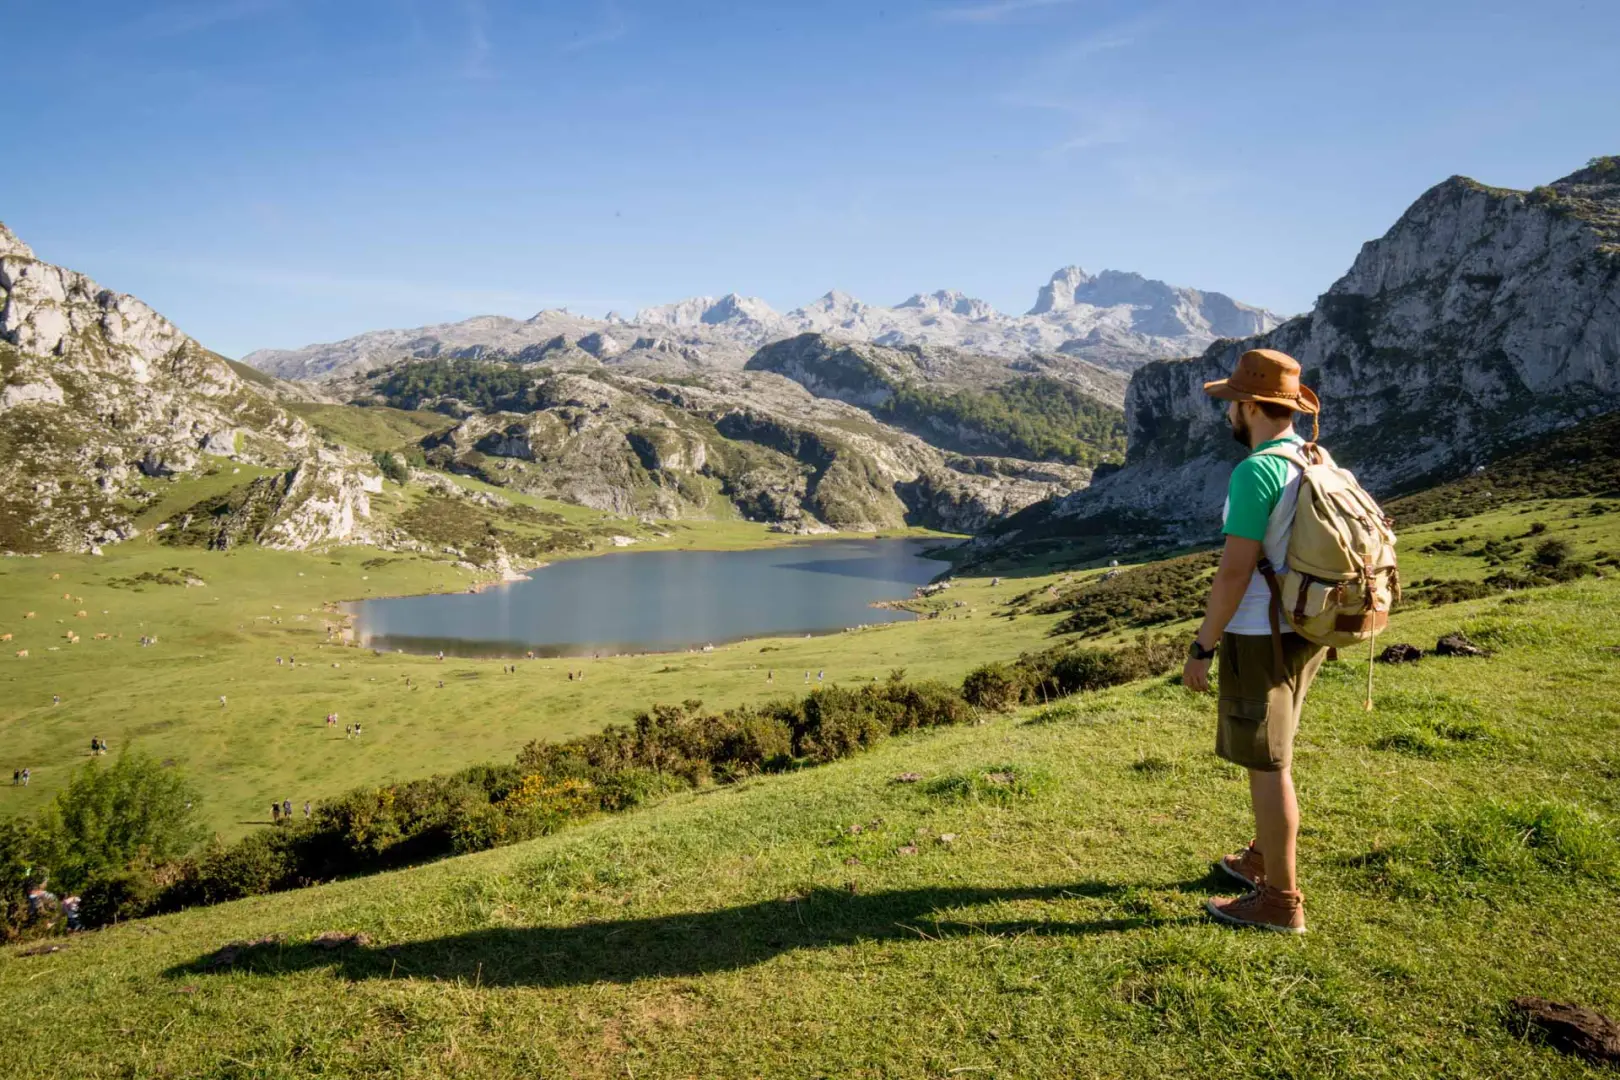 Únete al viaje en grupo a Asturias en verano. Disfruta de los pueblos con encanto de Asturias, sus playas así como de la gastronomía.